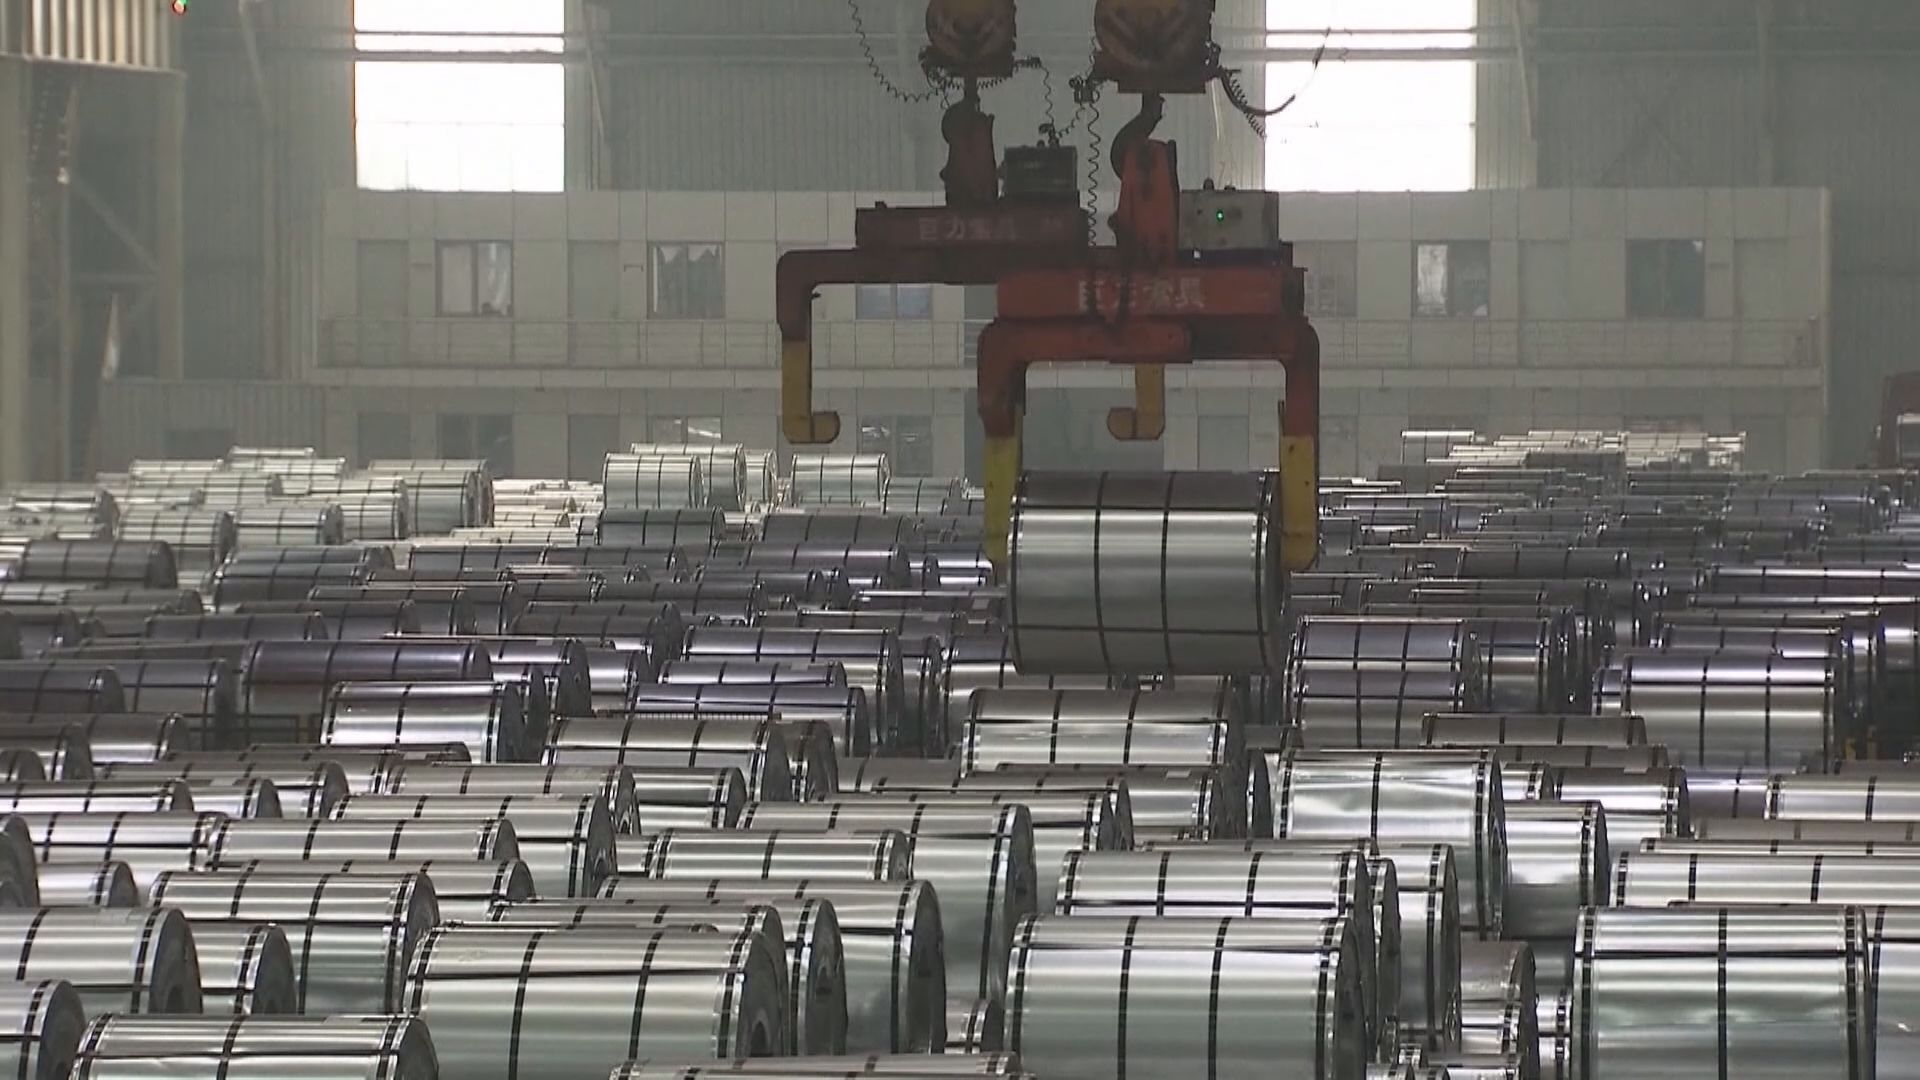 【減碳排放】彭博:歐美研向華鋼鐵及鋁材徵新關稅